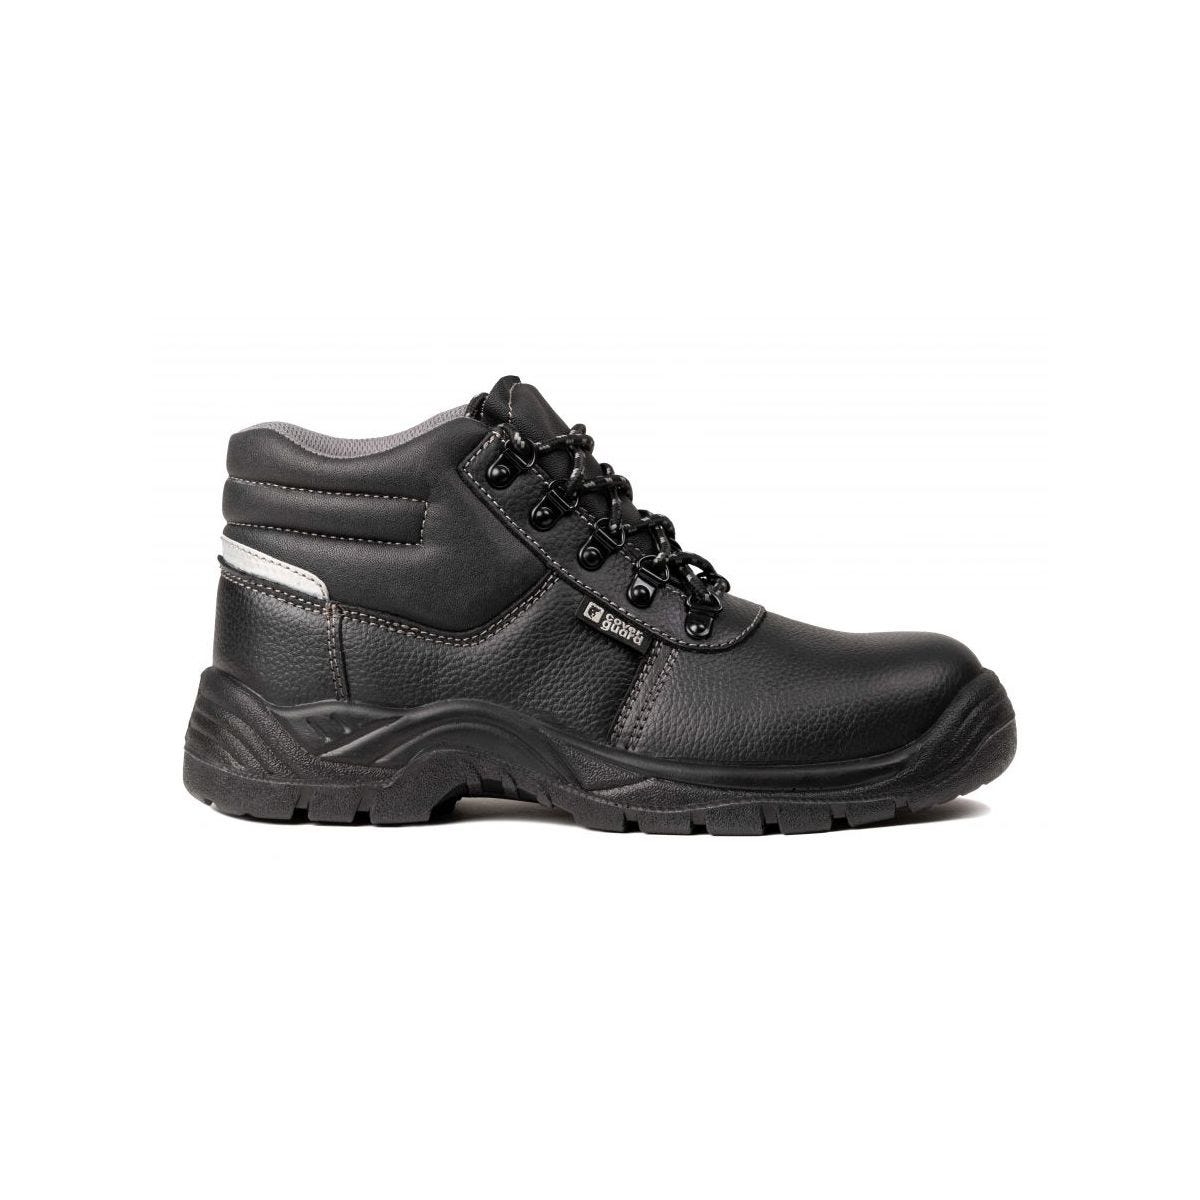 Chaussures de sécurité hautes AGATE II S3 Noir - Coverguard - Taille 39 2